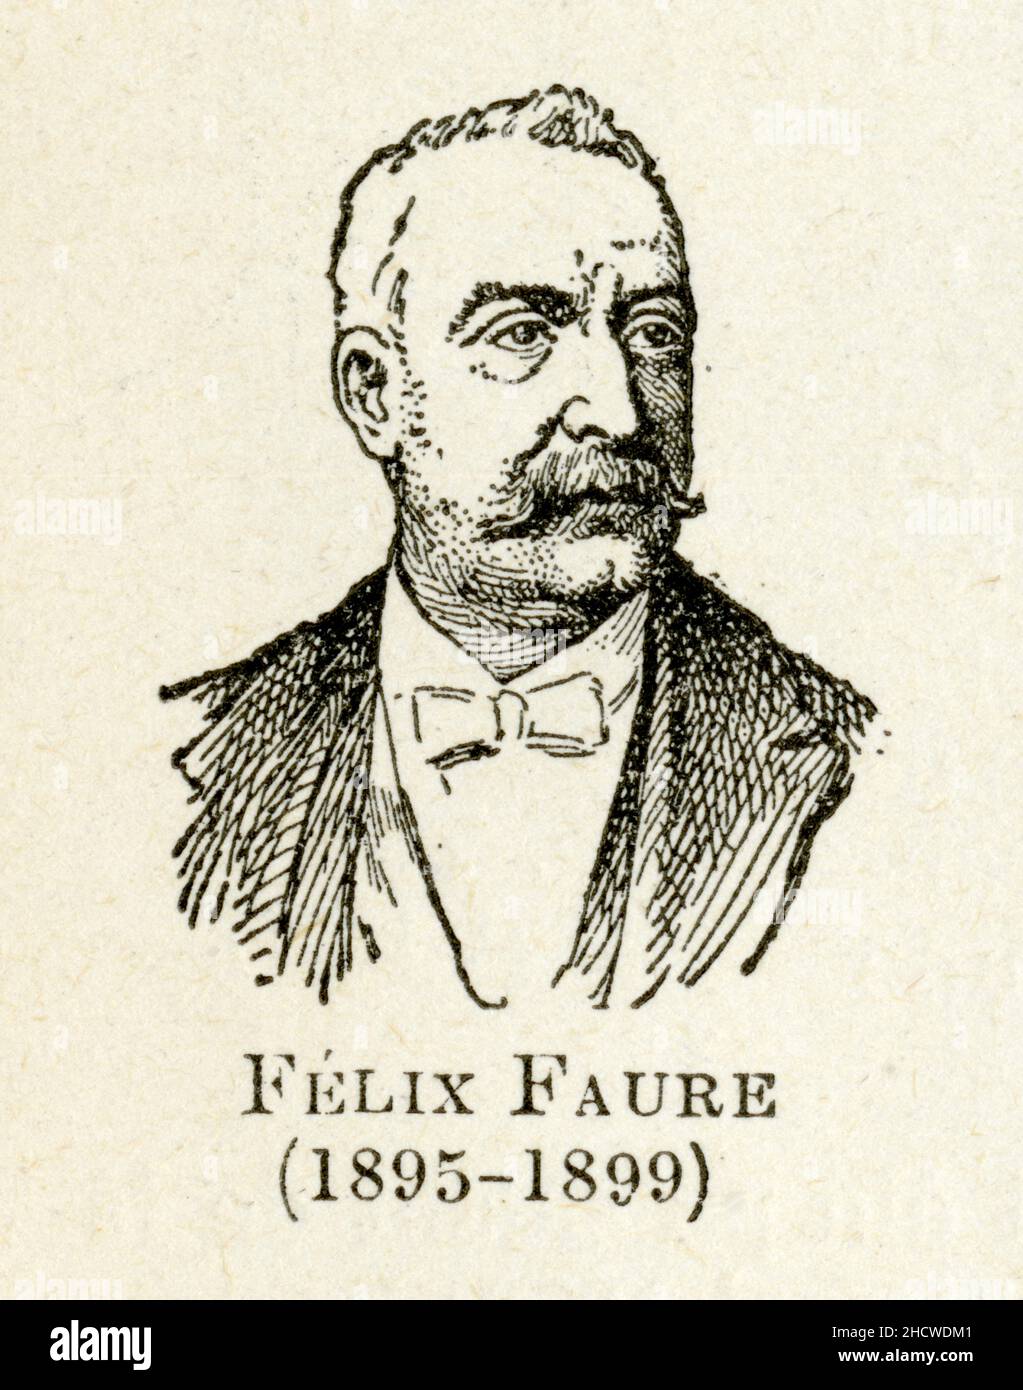 Félix Faure, né le 30 janvier 1841 à Paris et mort le 16 février 1899 dans la même ville, est un homme d'État français. Il est président de la Républi Stock Photo